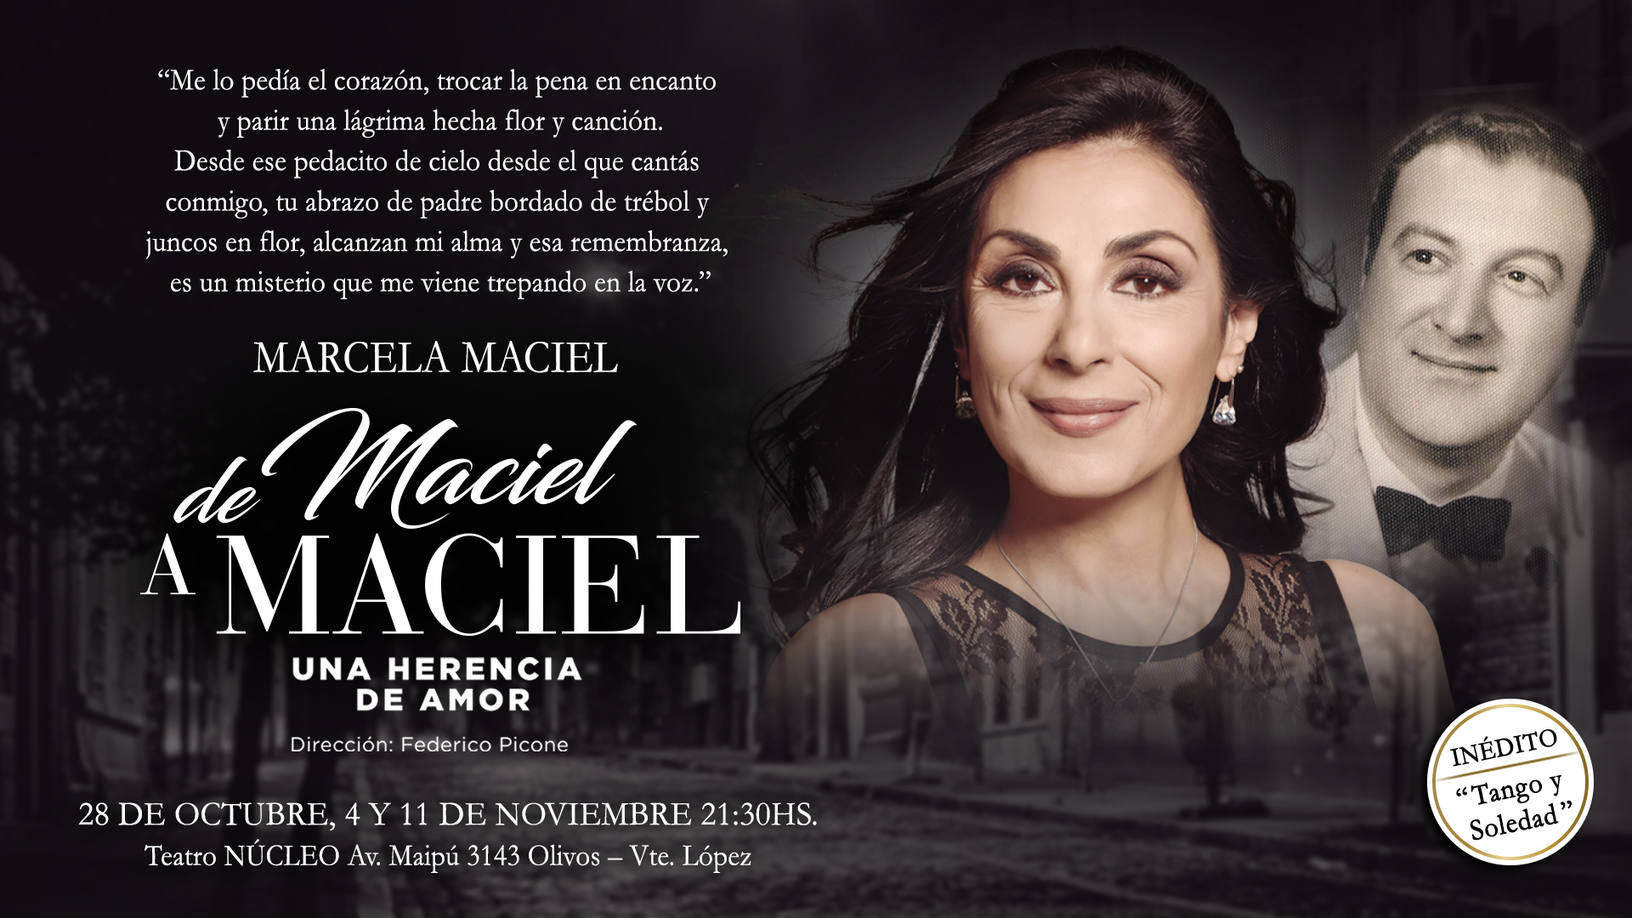 Photo of Hoy gran presentación de la tanguera Marcela Maciel en Olivos